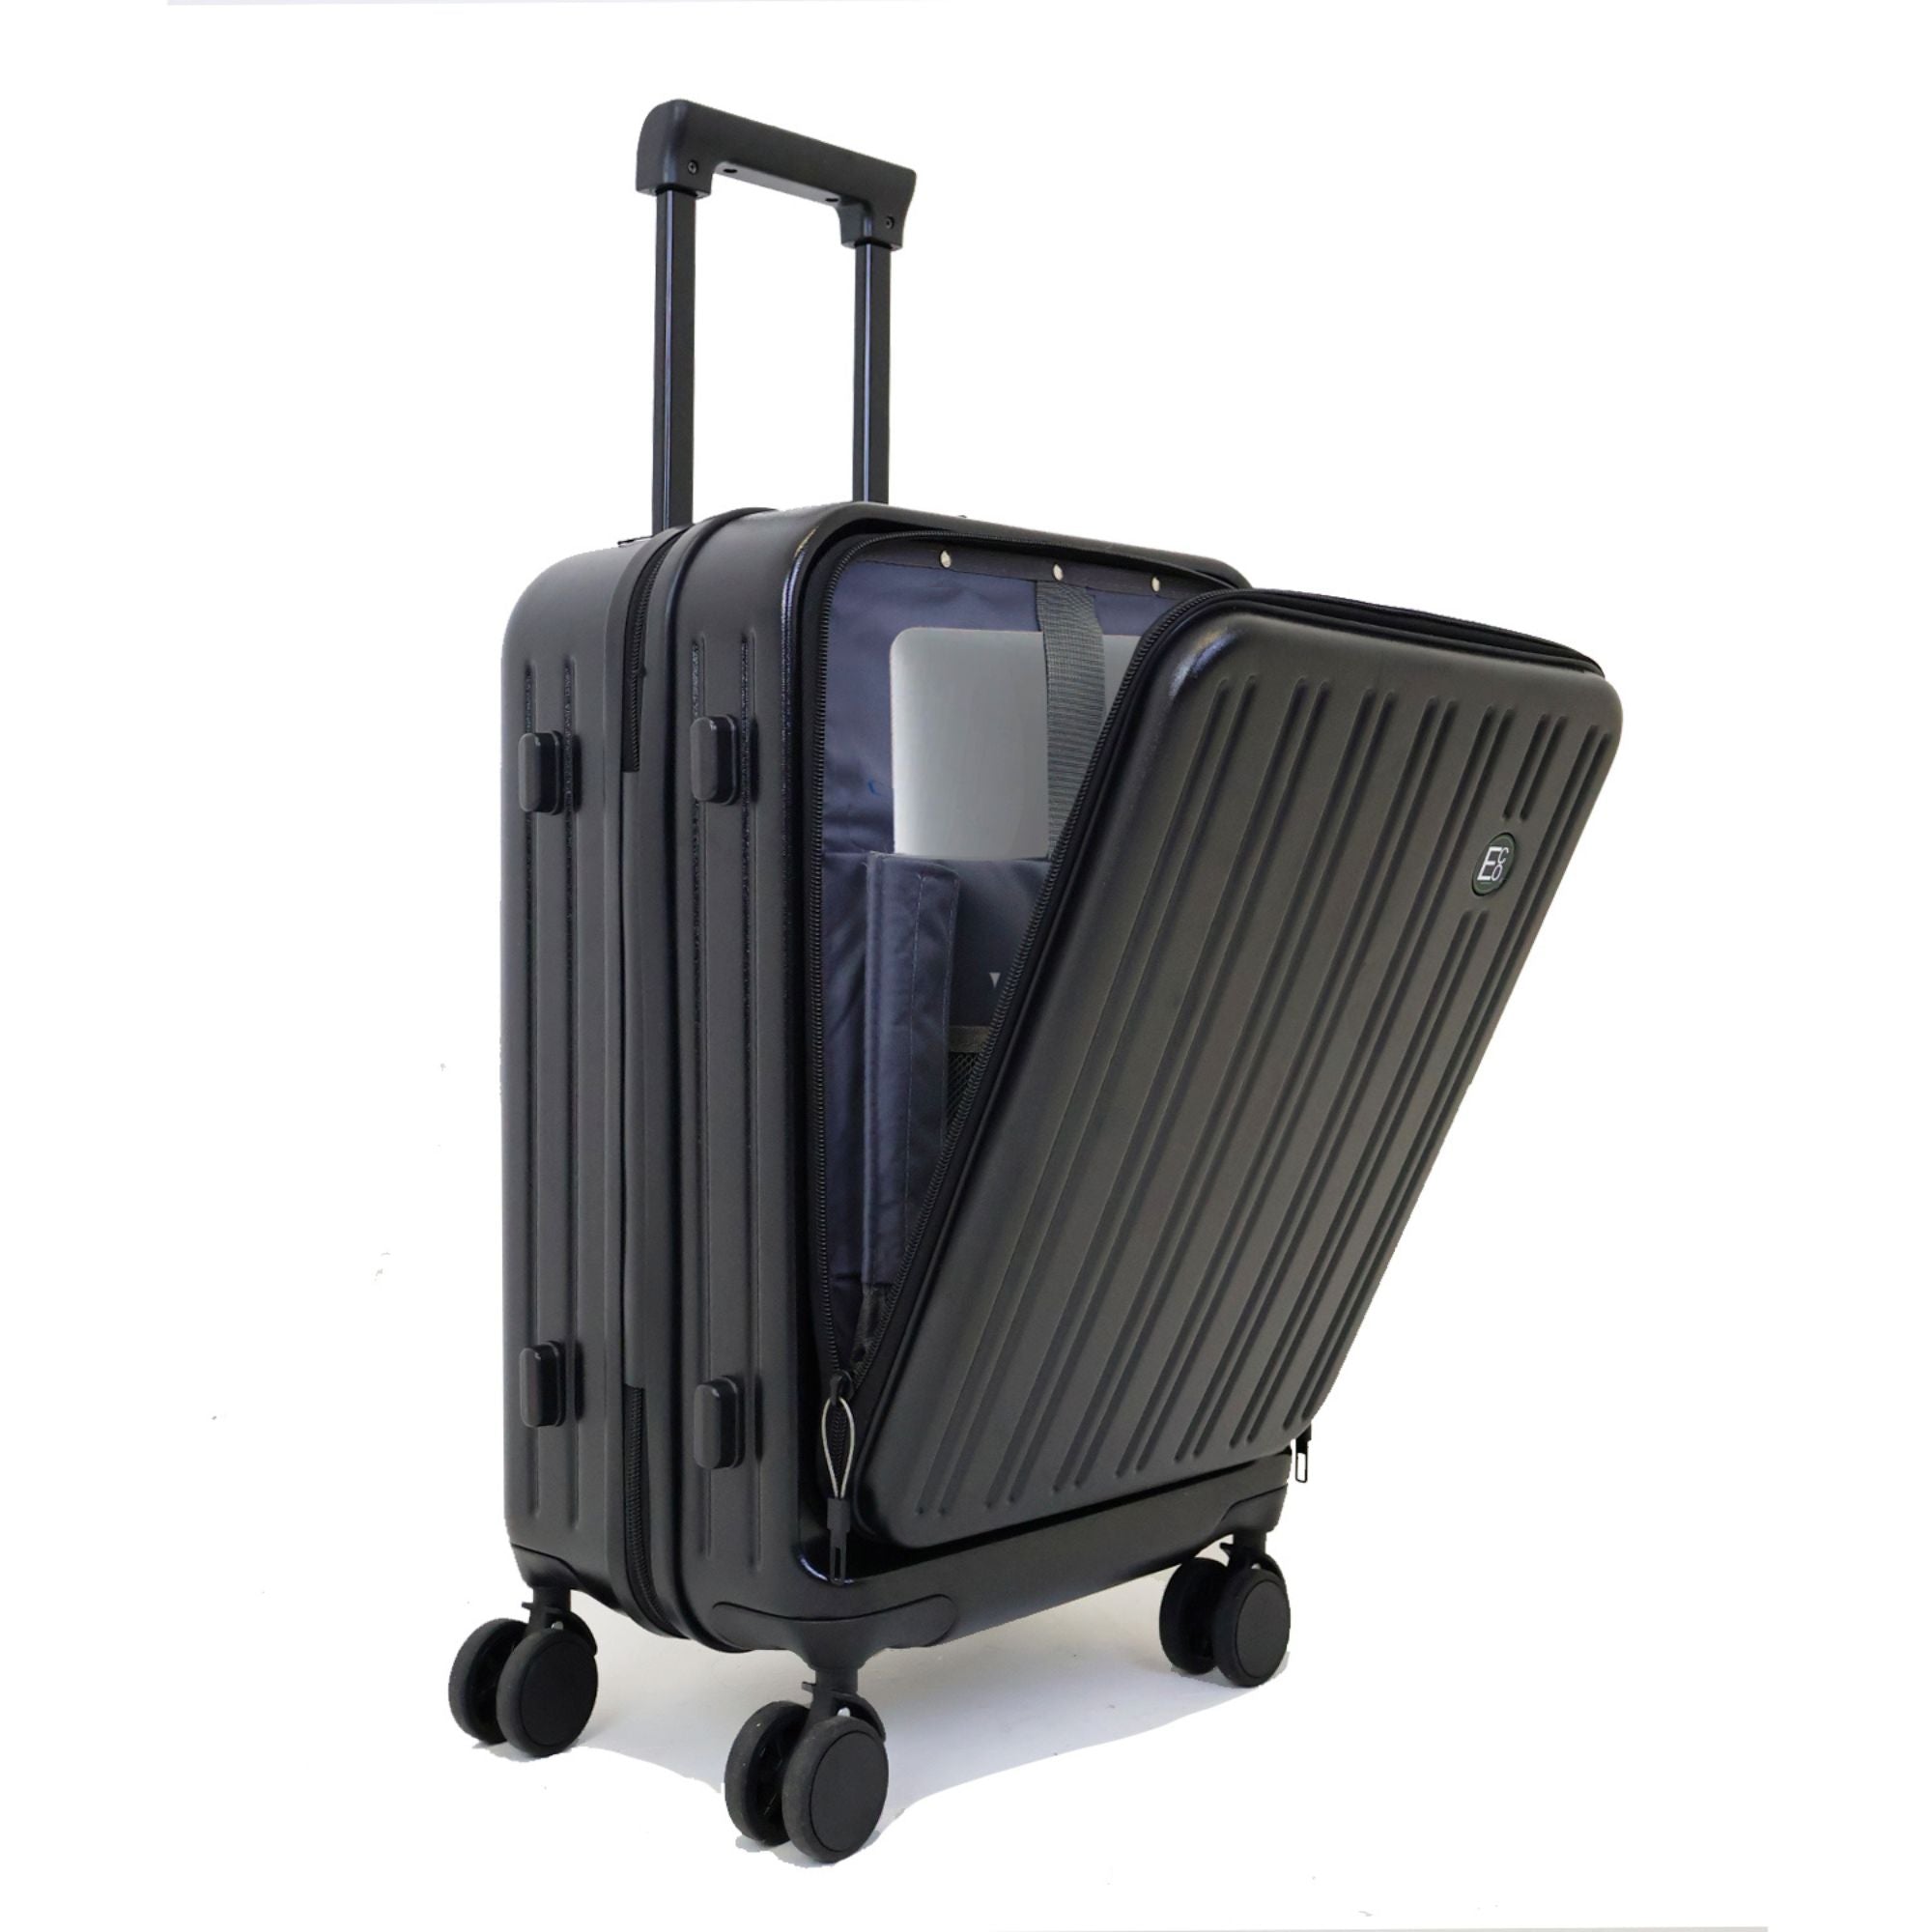 Seattle Laptop Carry On Hardshell Luggage Case - 55cm